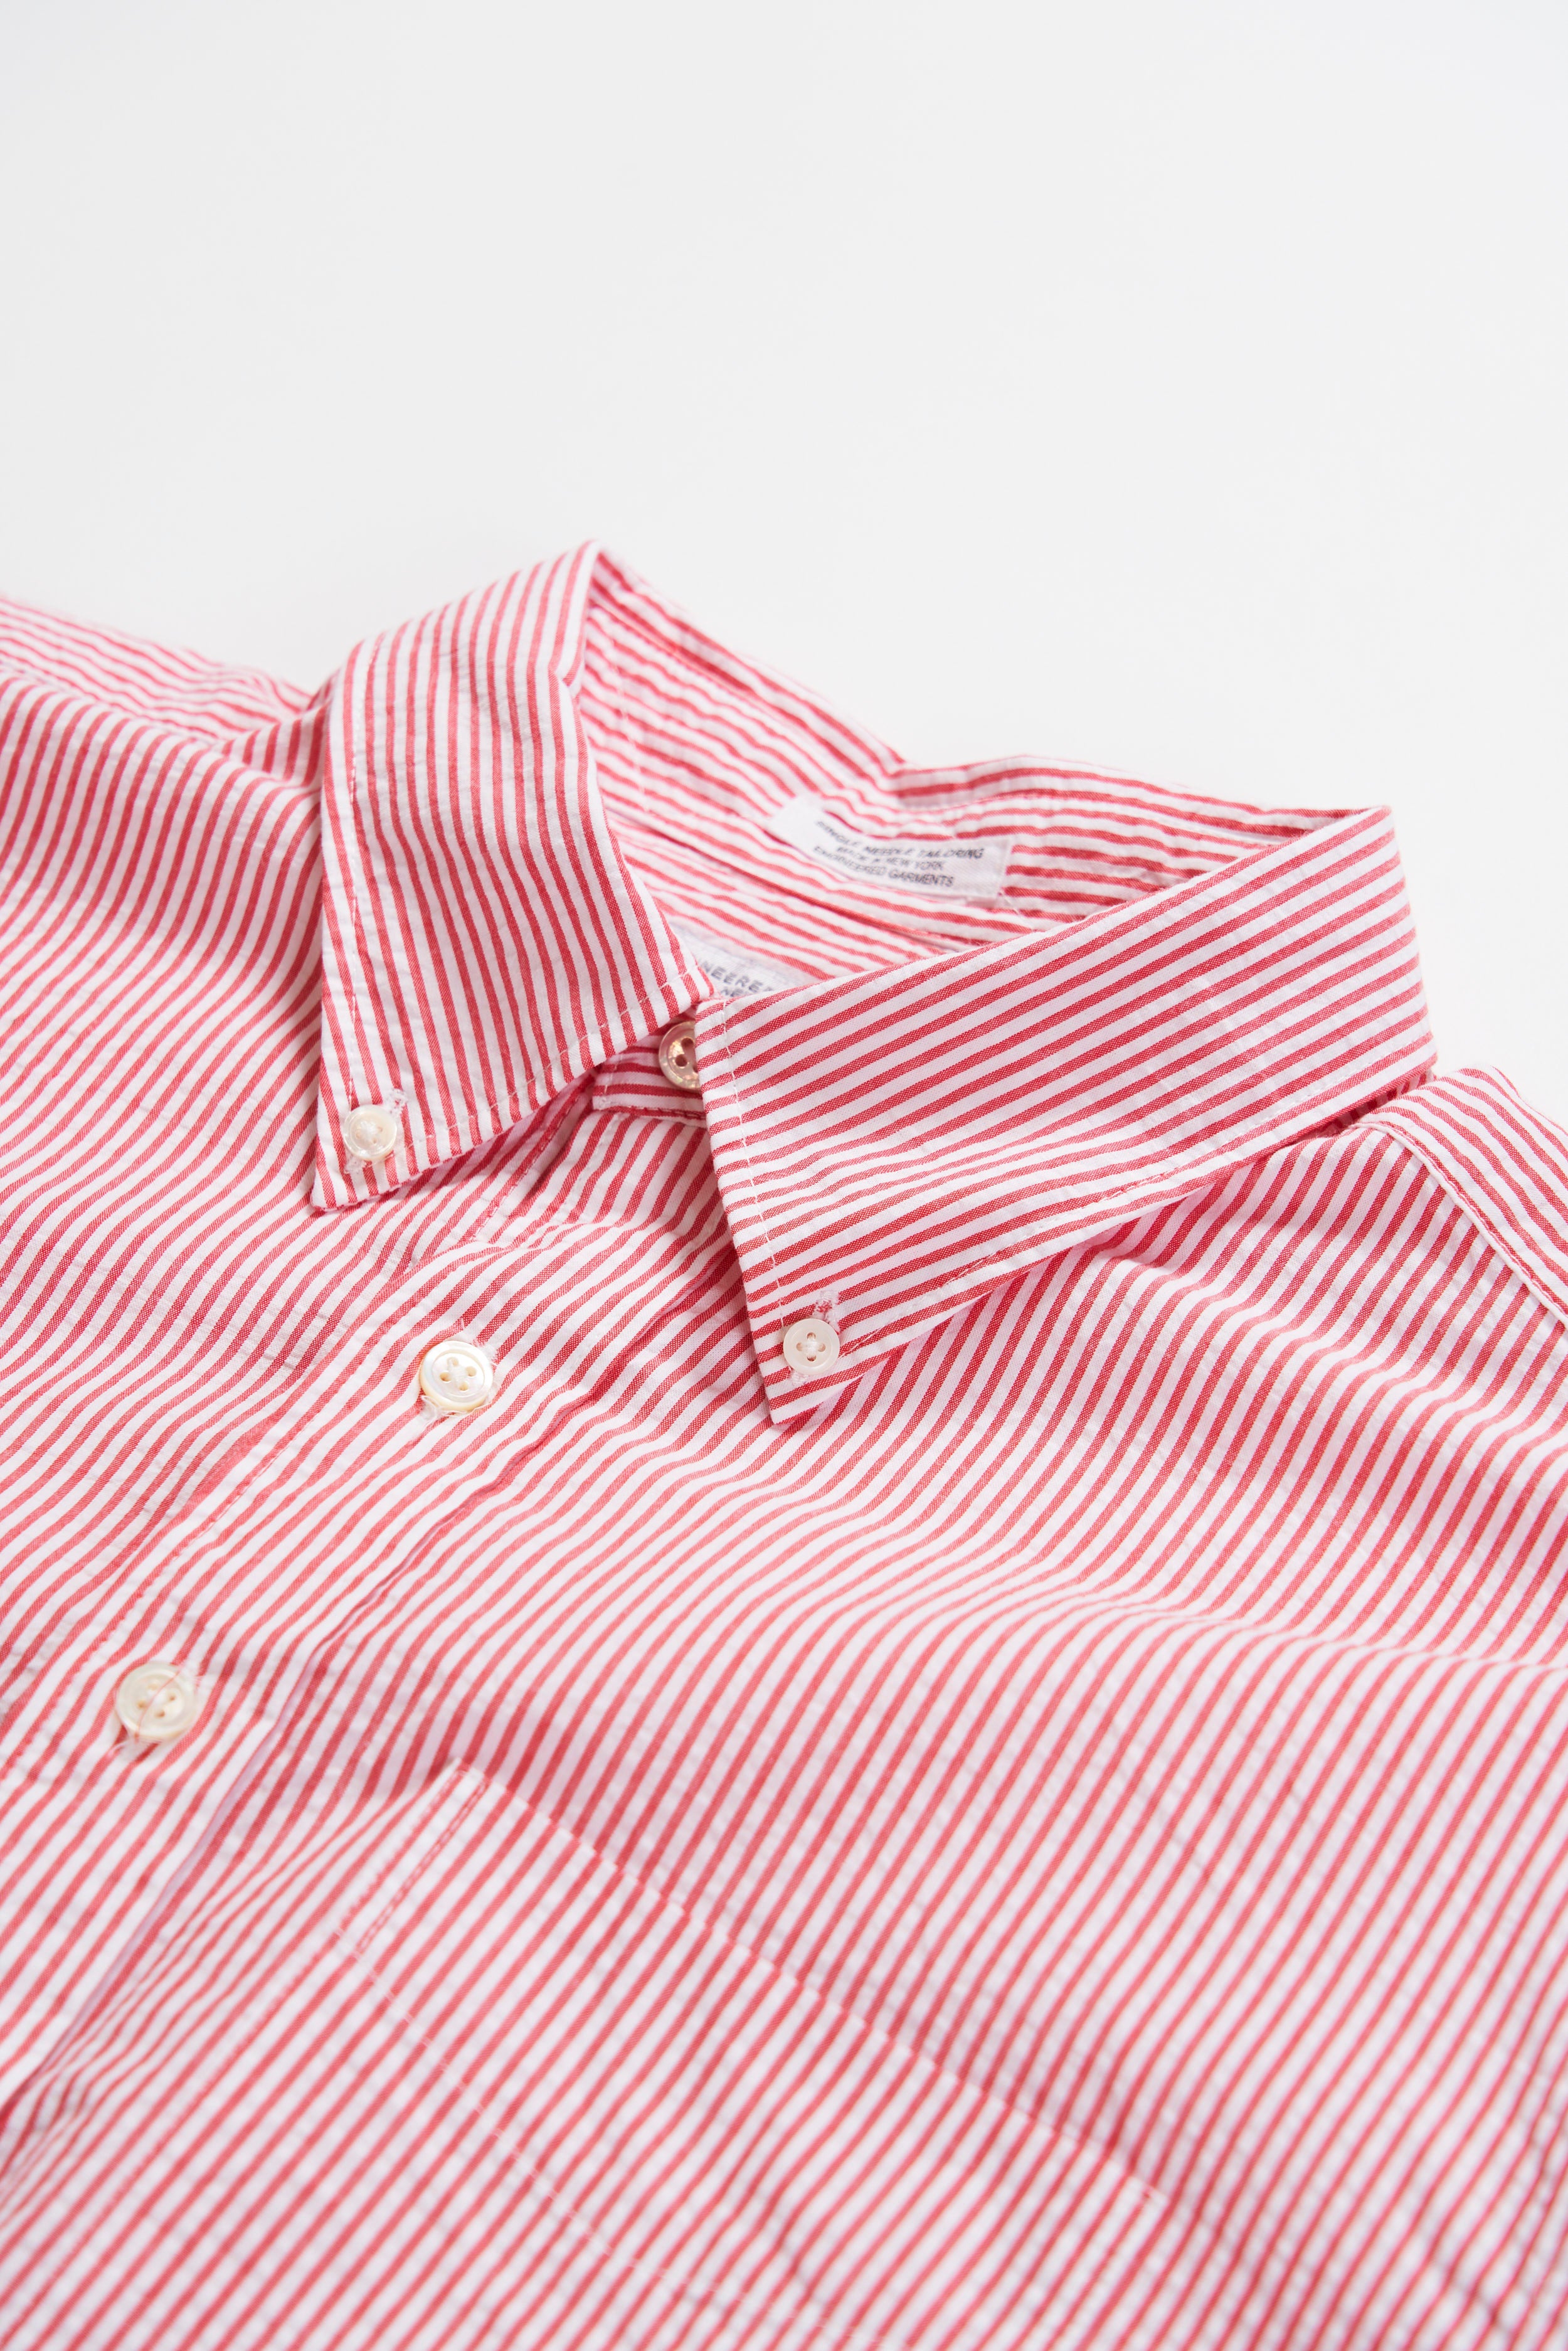 19 Century BD Shirt - Red / White Cotton Seersucker